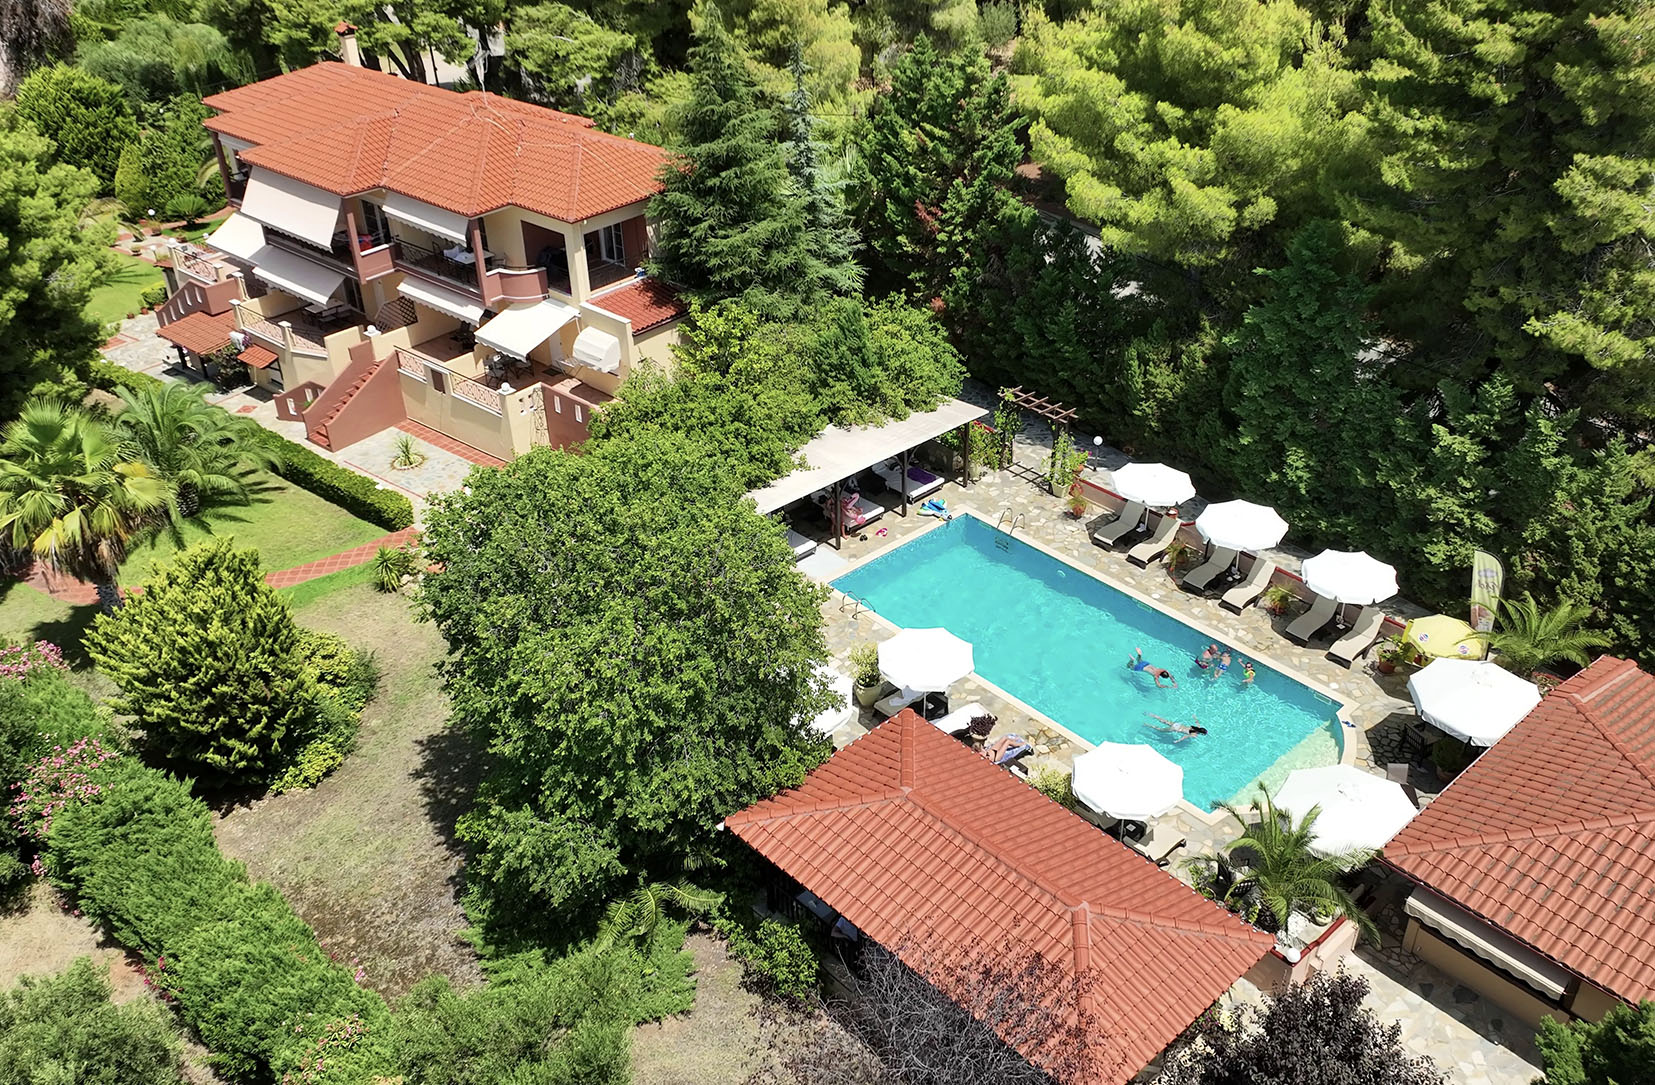 Agrili Aparts - Pool - aerial views